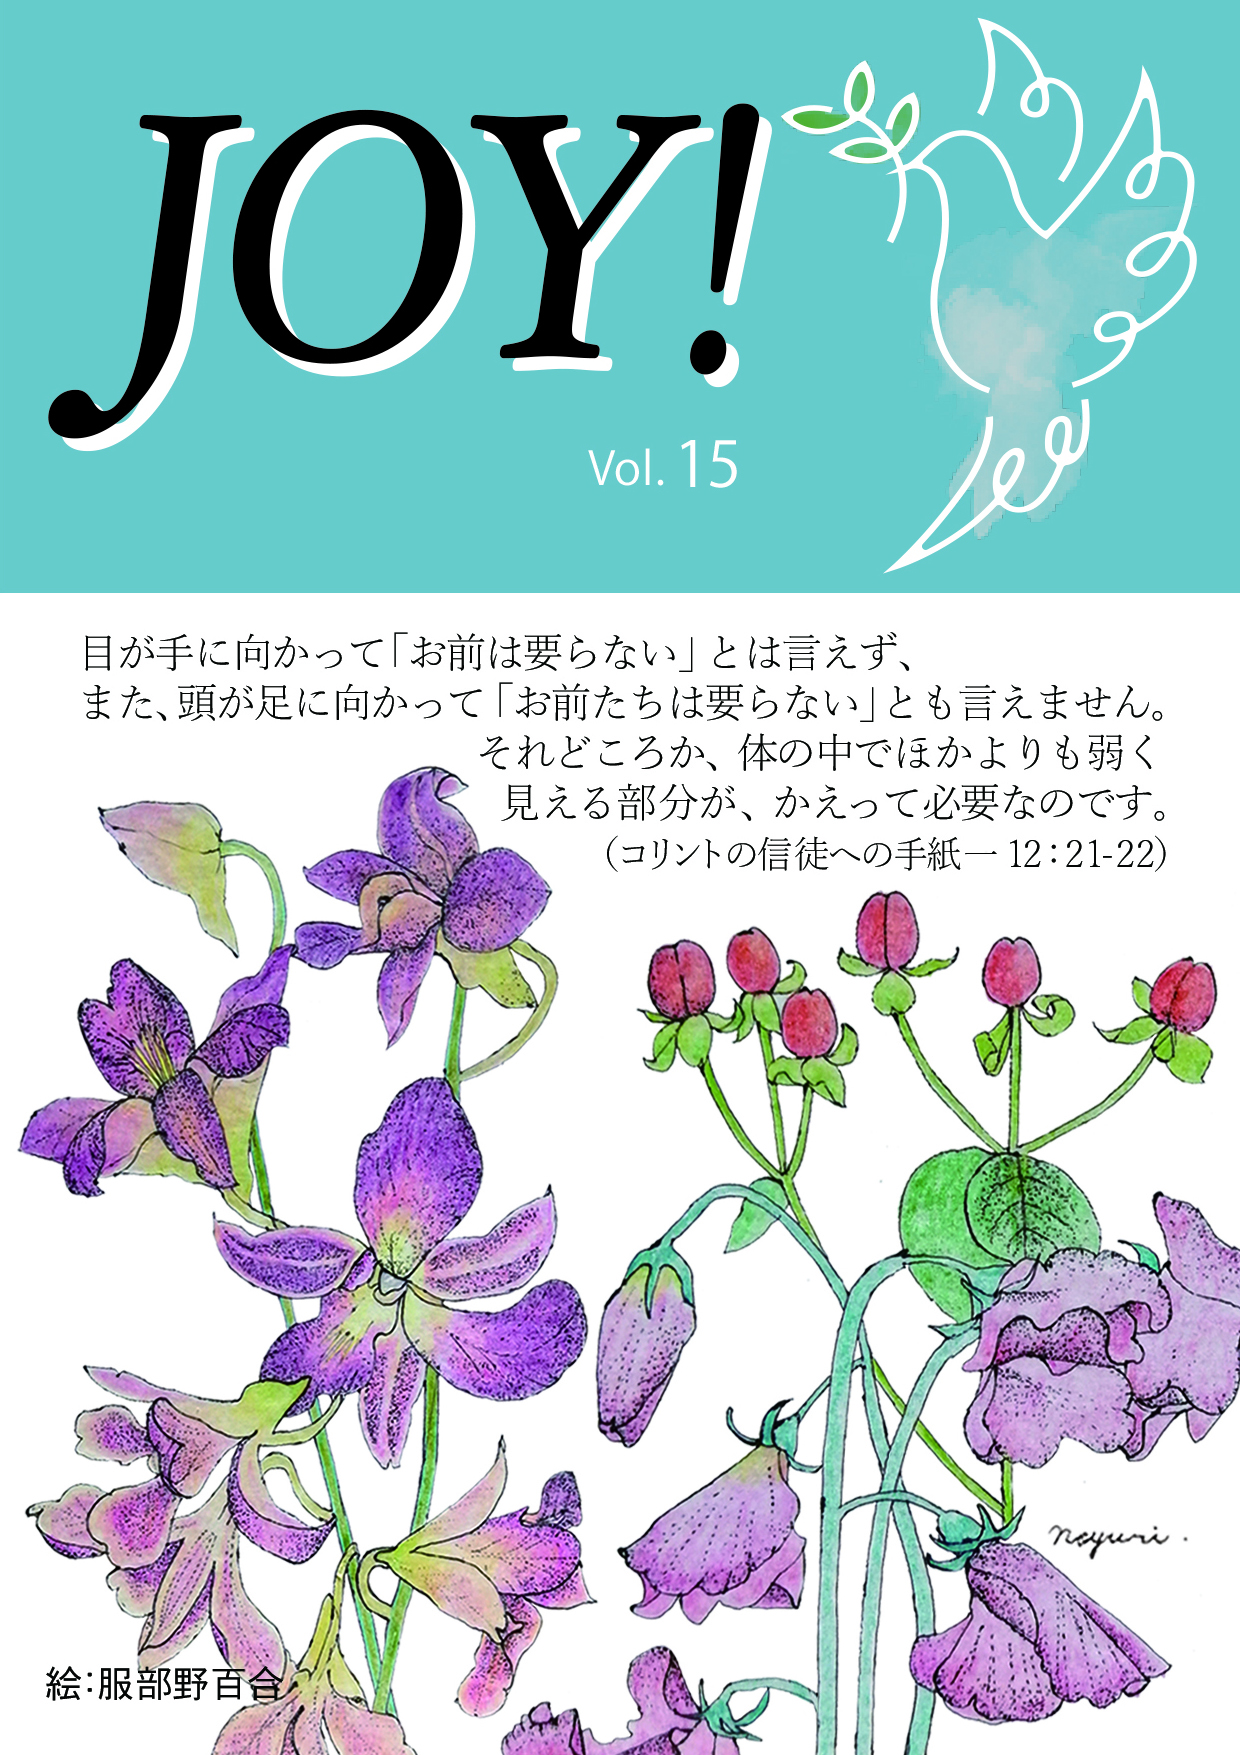 季刊紙 『JOY!』夏号配布中(Vol.15)